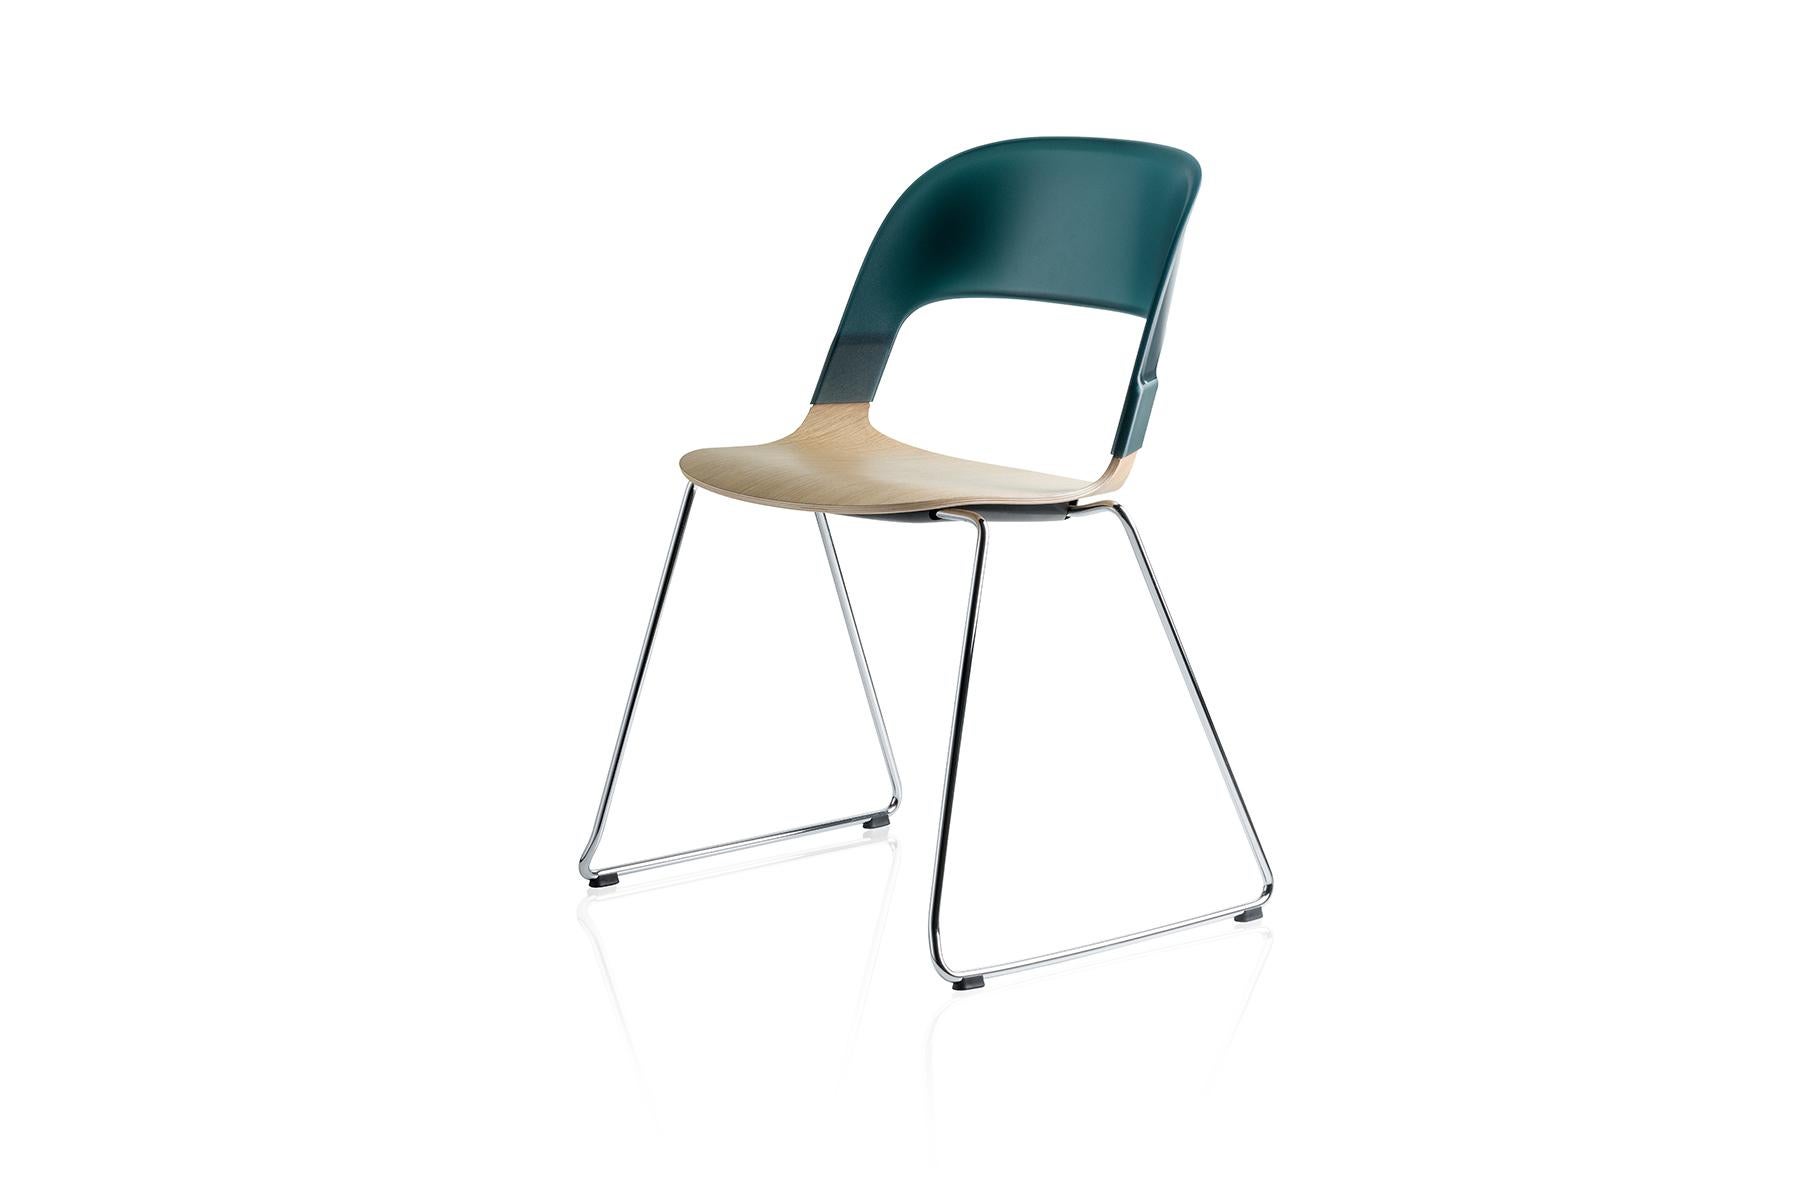 Avec Pair de Benjamin Hubert, nous présentons un design unique associé à des possibilités illimitées. Pair est une chaise empilable et se présente dans un mélange de placage et de plastique qui la différencie des chaises empilables existantes dans